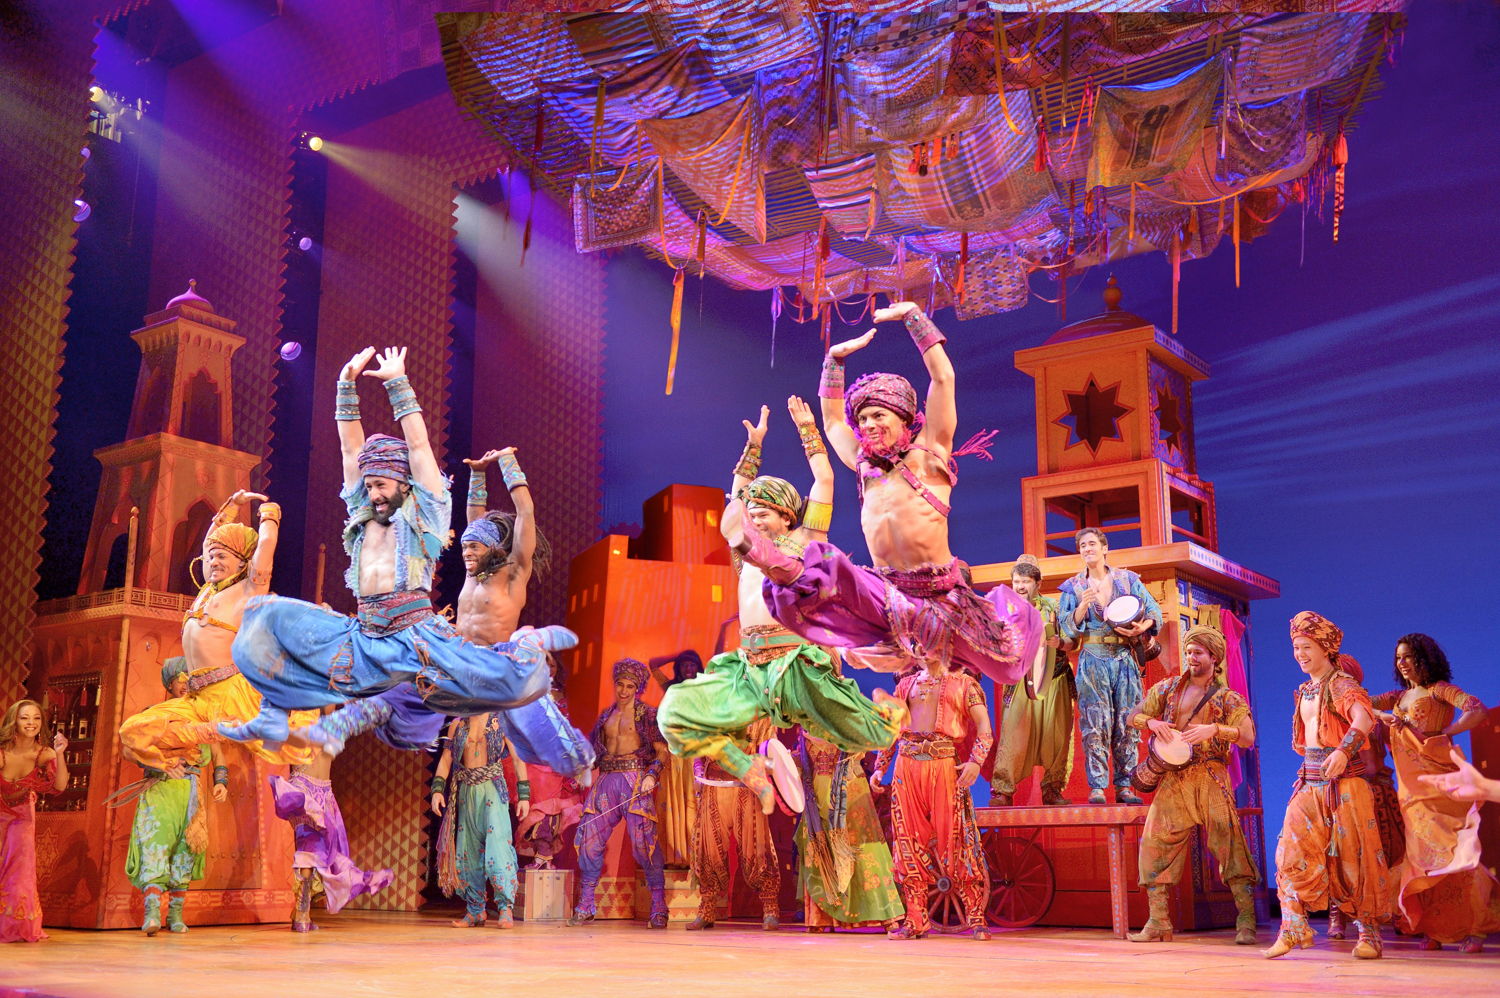 Arabian Nights Men. Disney's Aladdin Original Broadway Company. ©Disney. Photo by Deen van Meer.